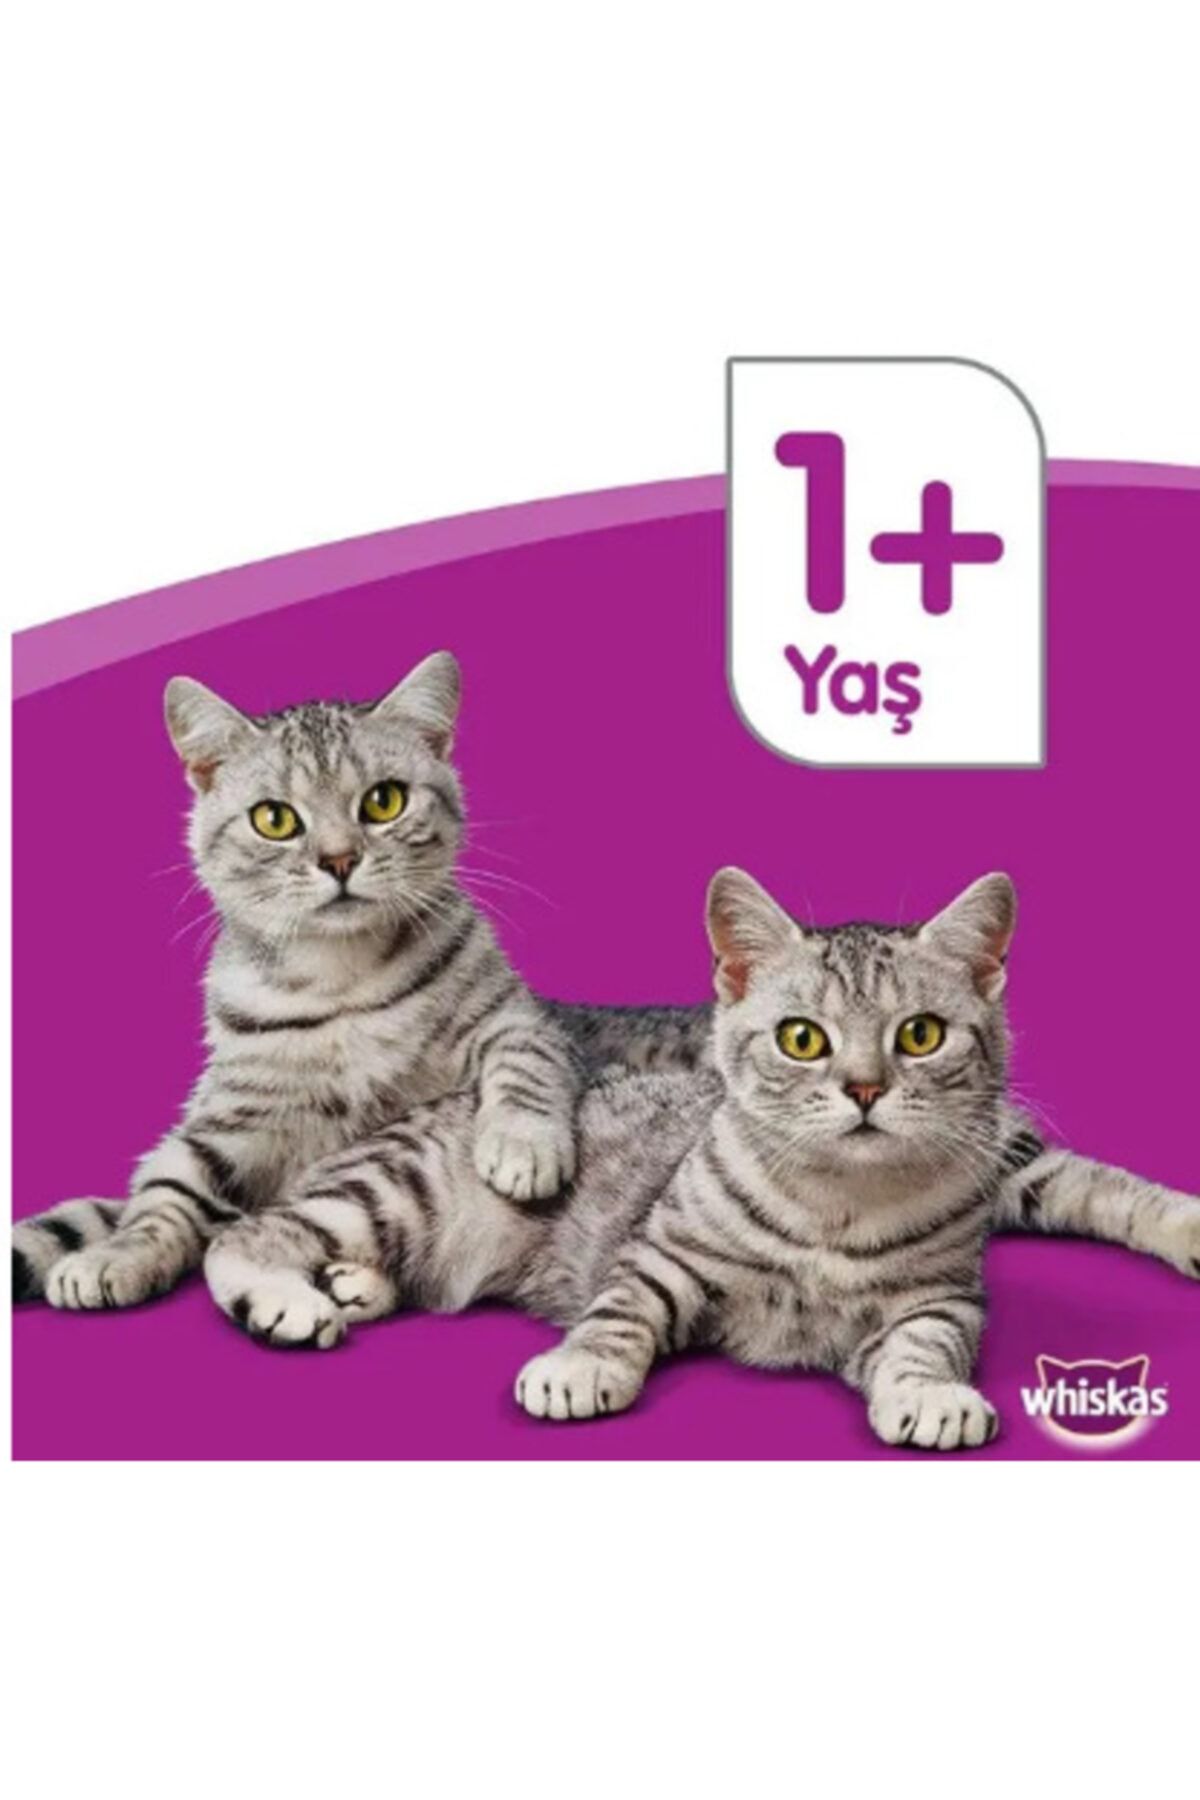 Whiskas Ton Balıklı Yaş Kedi Maması 4x100 gr 13 Adet Fiyatı, Yorumları